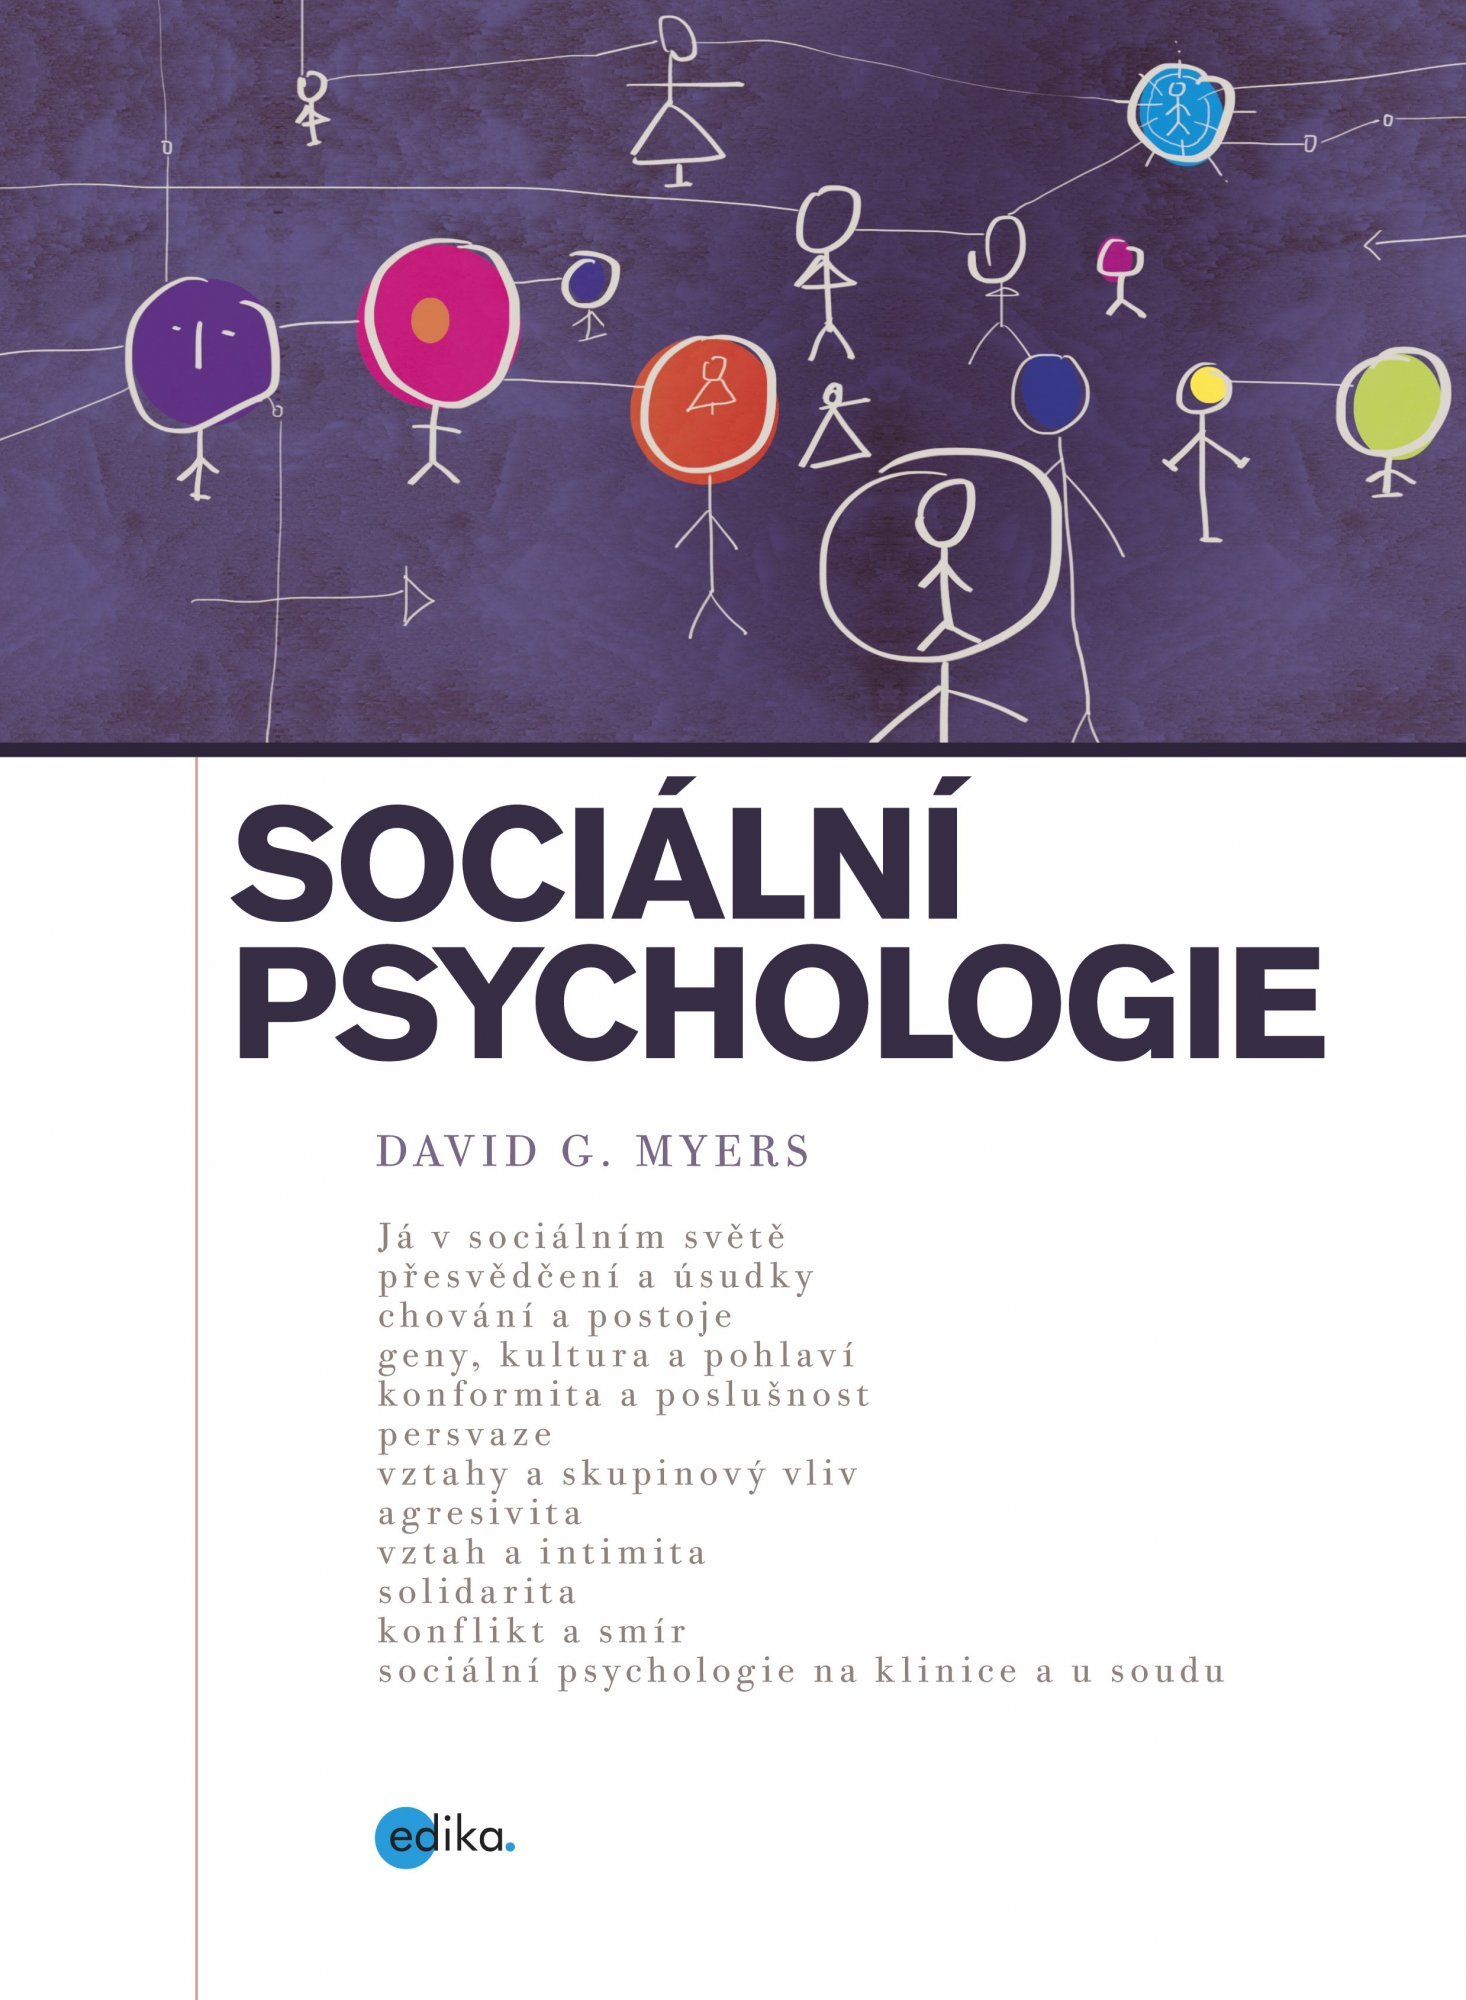 Sociální psychologie - David G. Myers